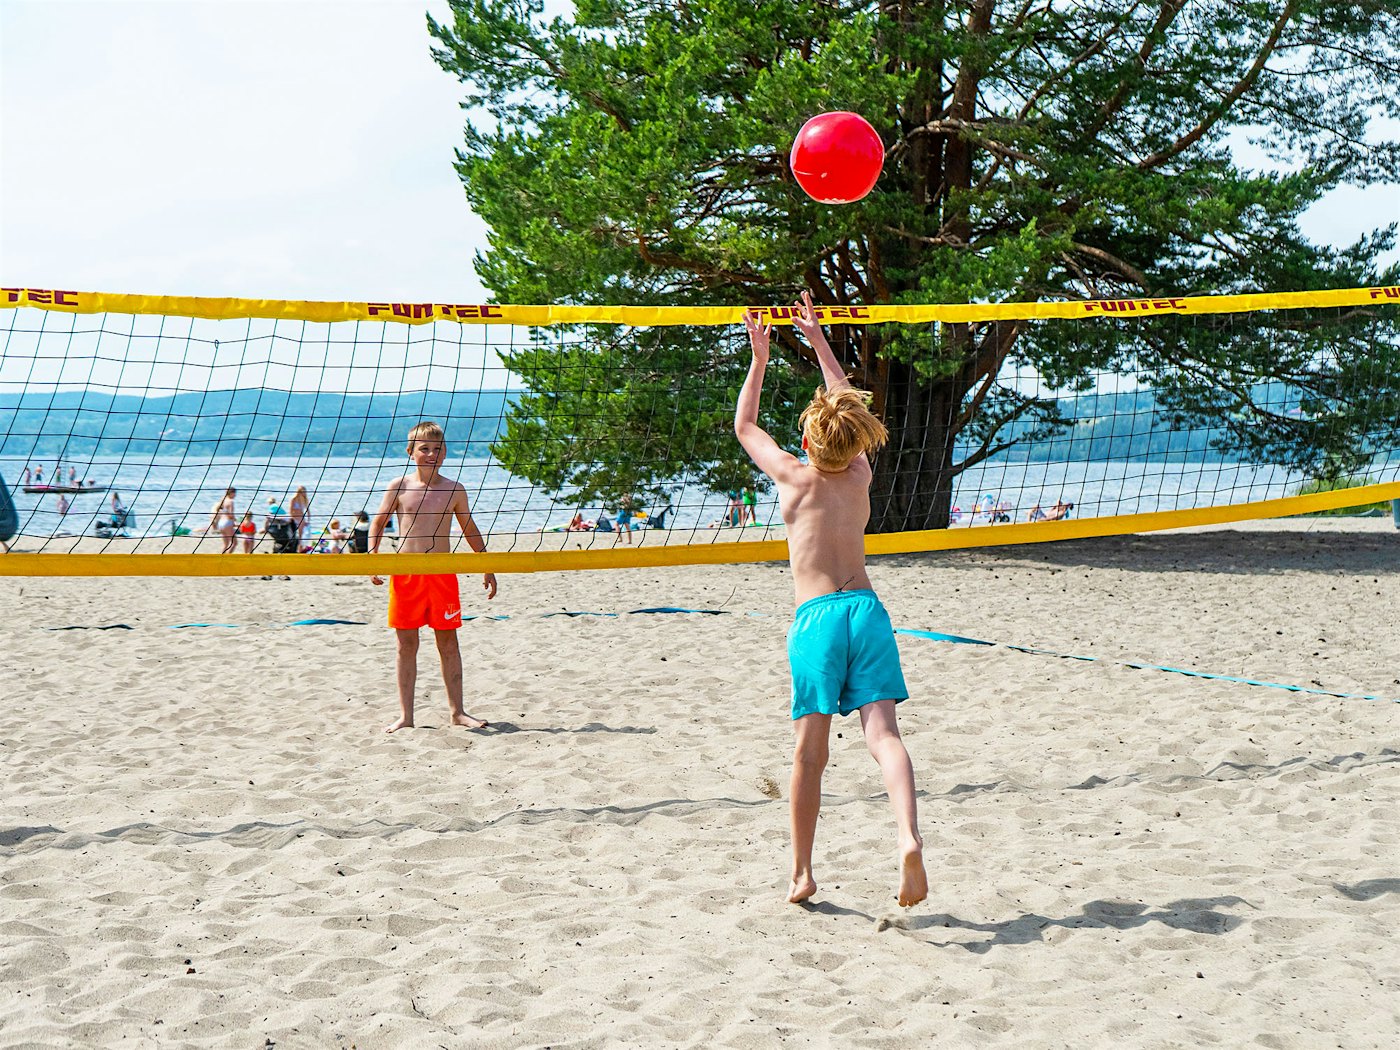 To gutter spiller volleyball på stranda.